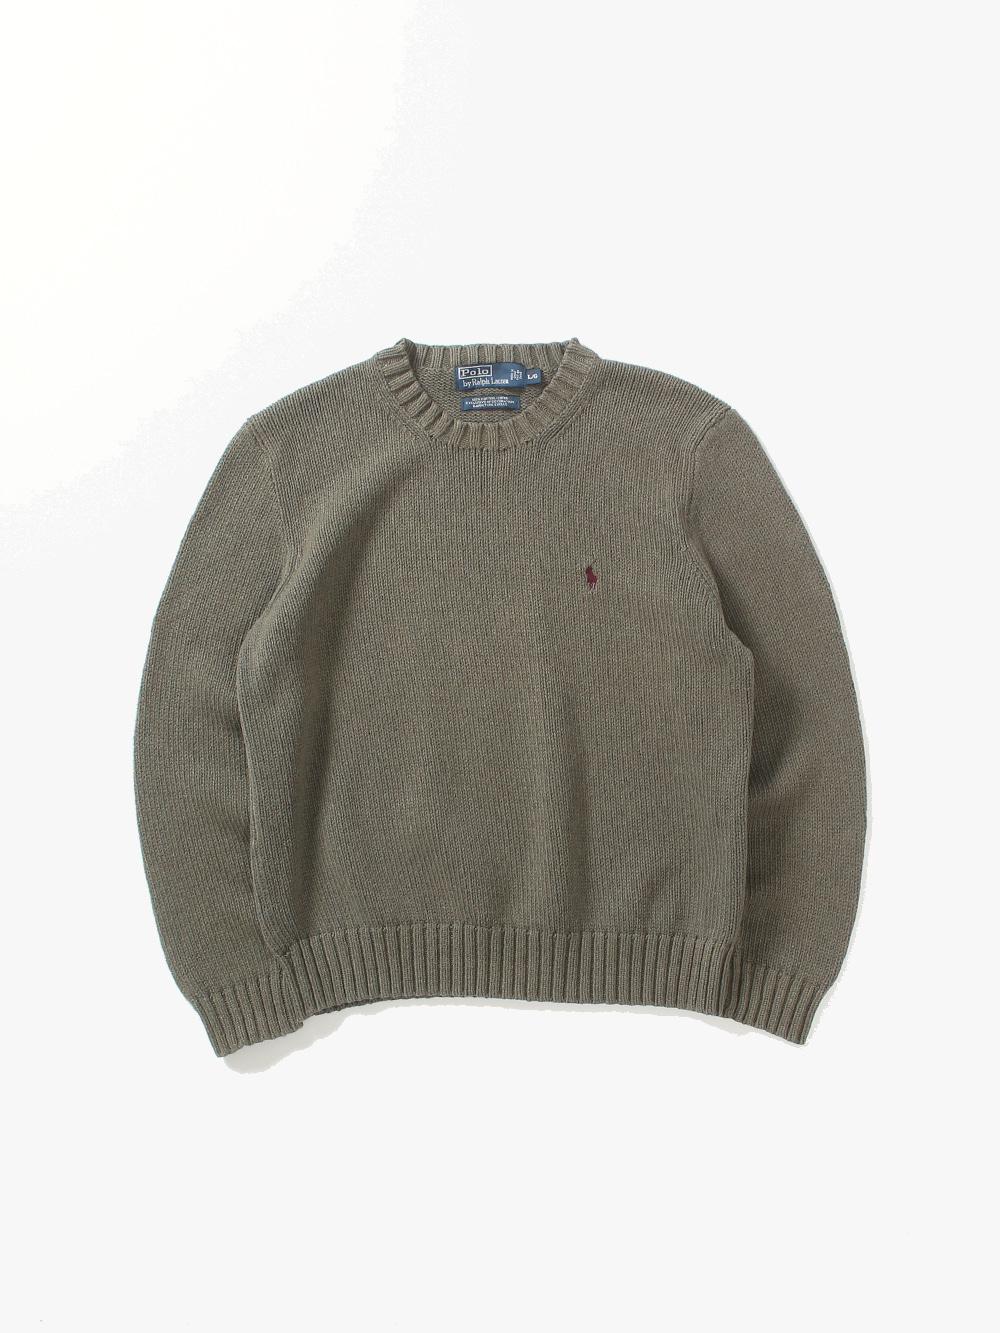 [ L ] Polo Ralph Lauren Sweater (6363)